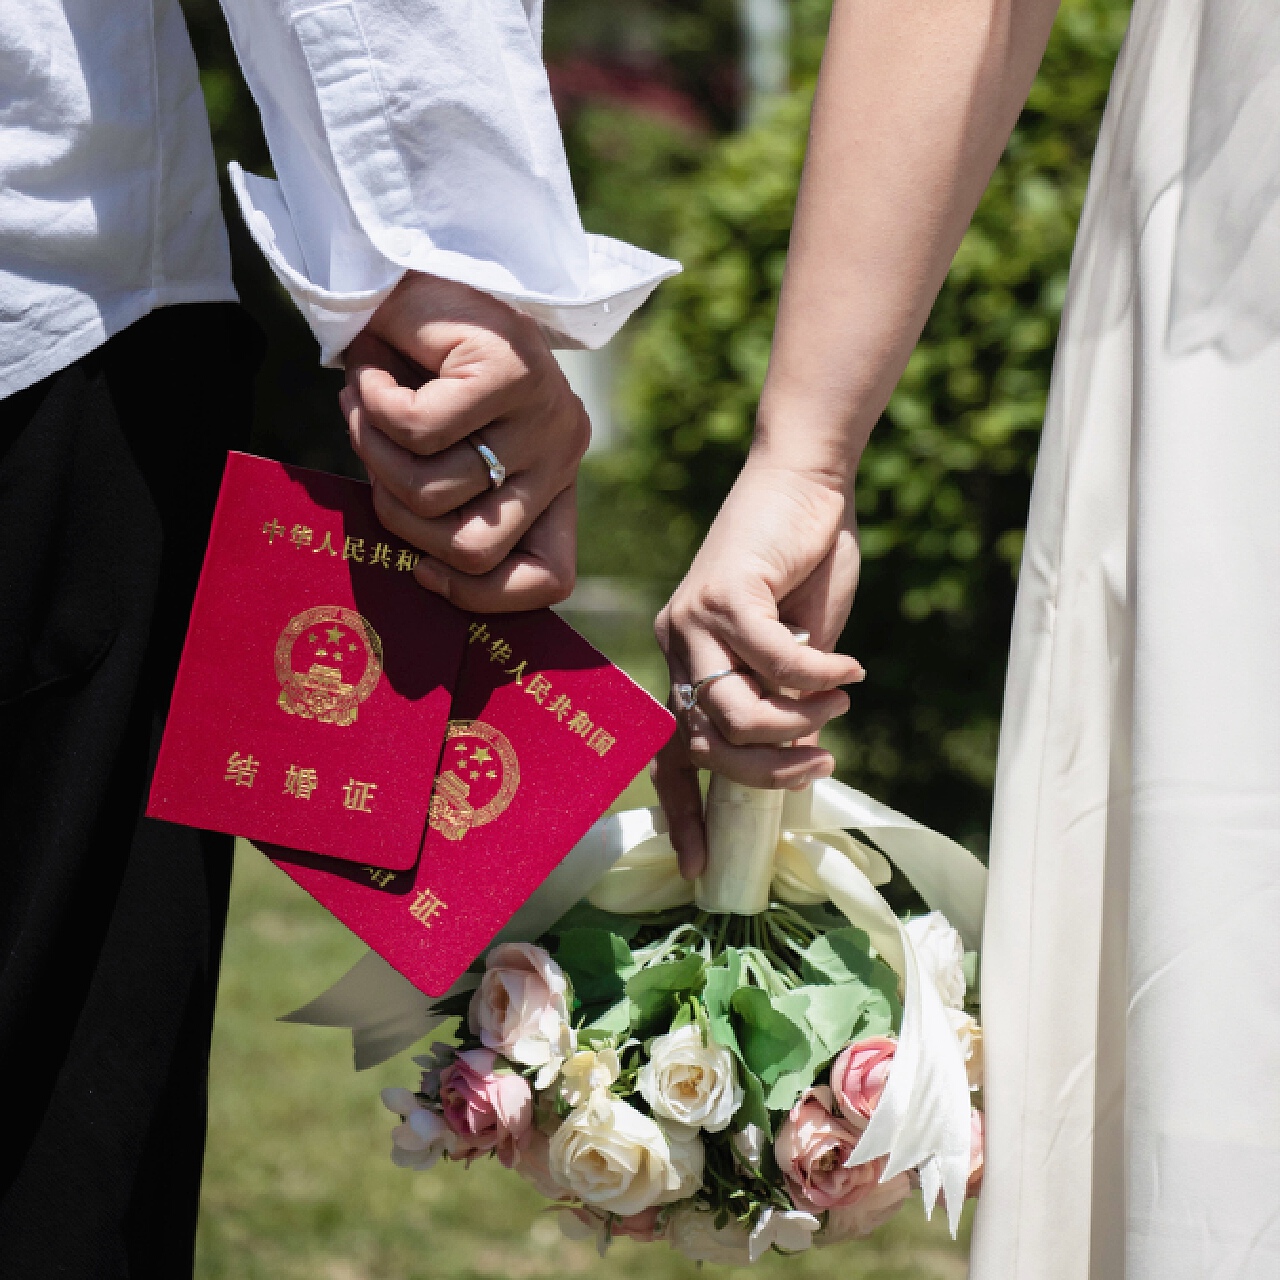 七夕节郑州共有1225对新人喜领结婚证 比起“520”少了一半多-大河新闻